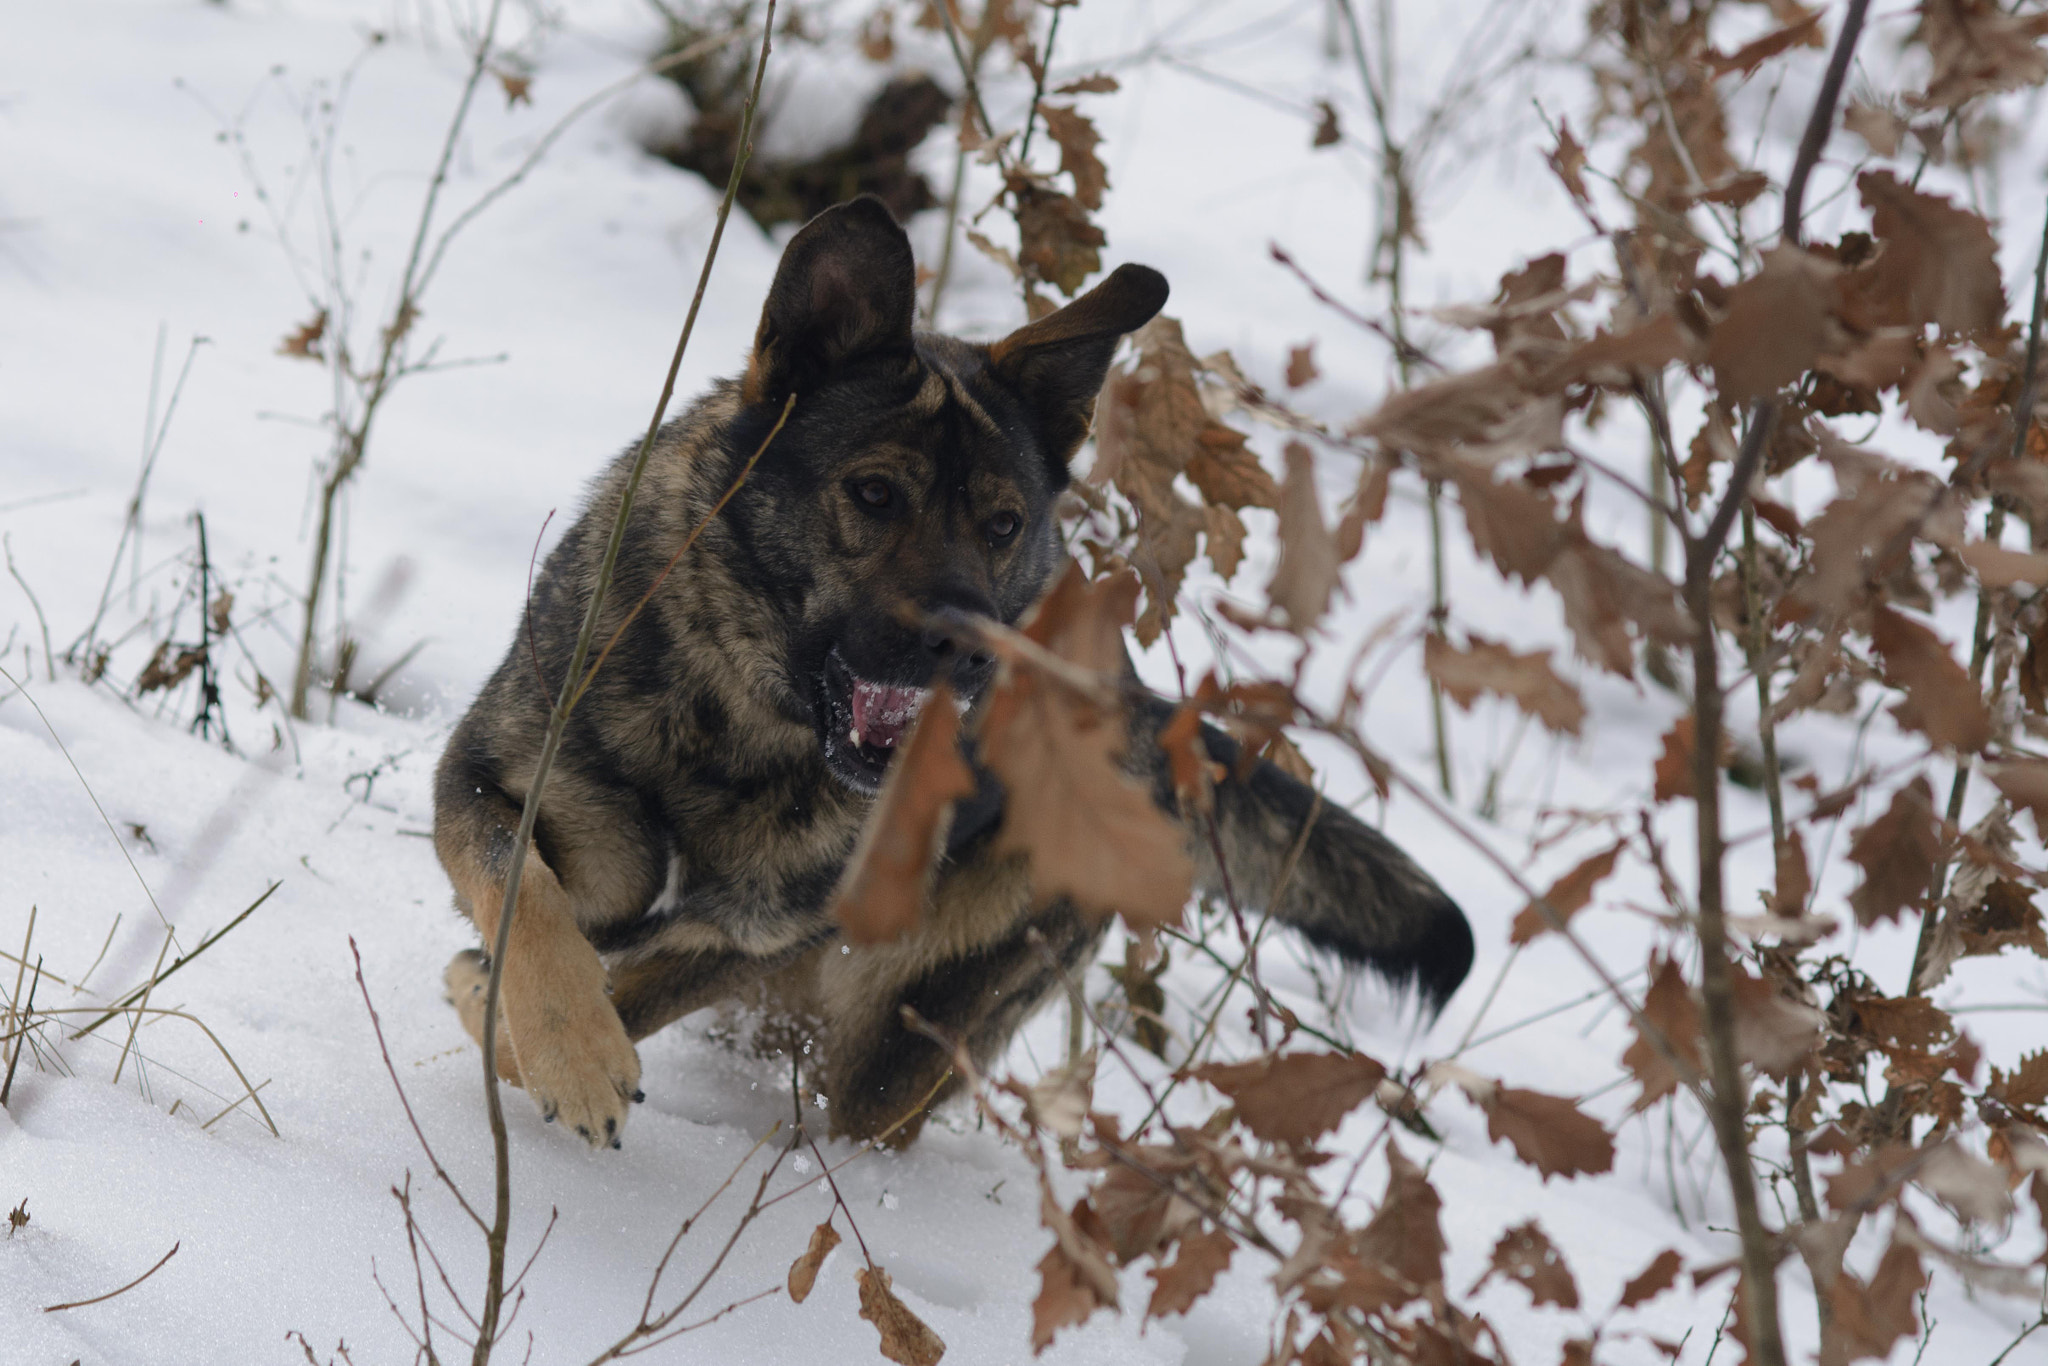 Nikon D7100 + AF Nikkor 85mm f/1.8 sample photo. Dog snow play photography